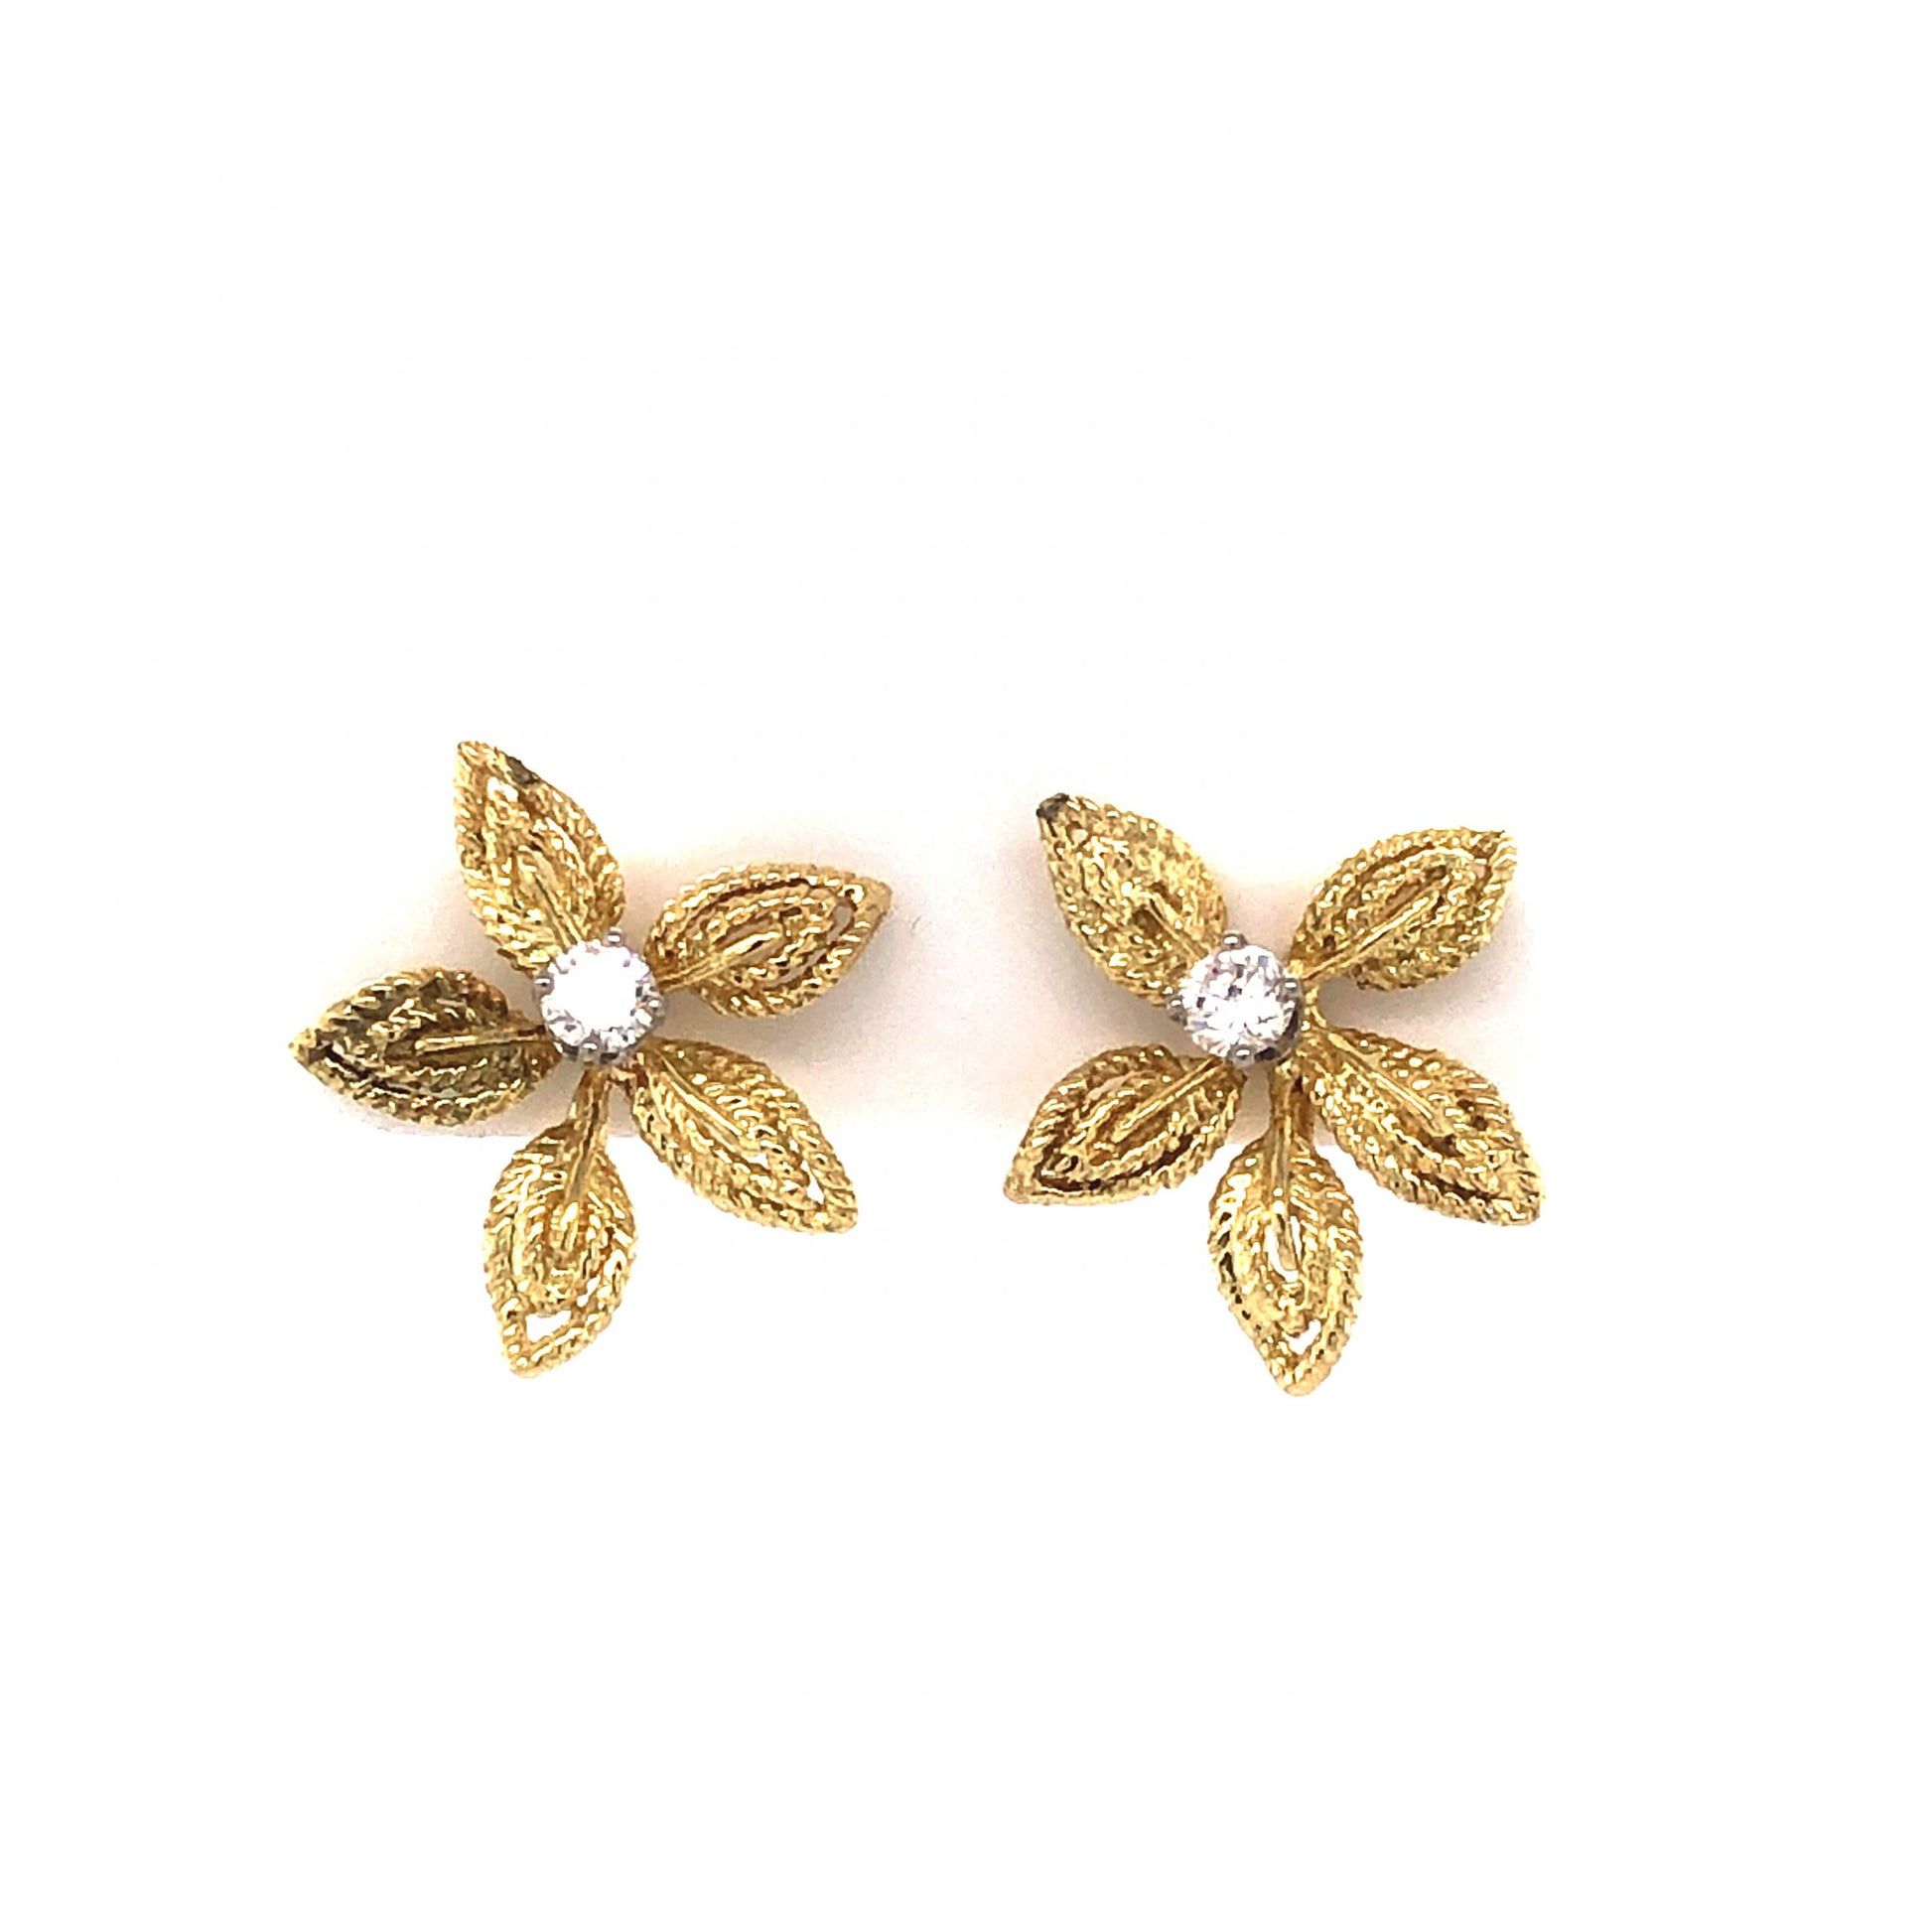 Diamond Flower Stud Earrings in 14K Yellow Gold